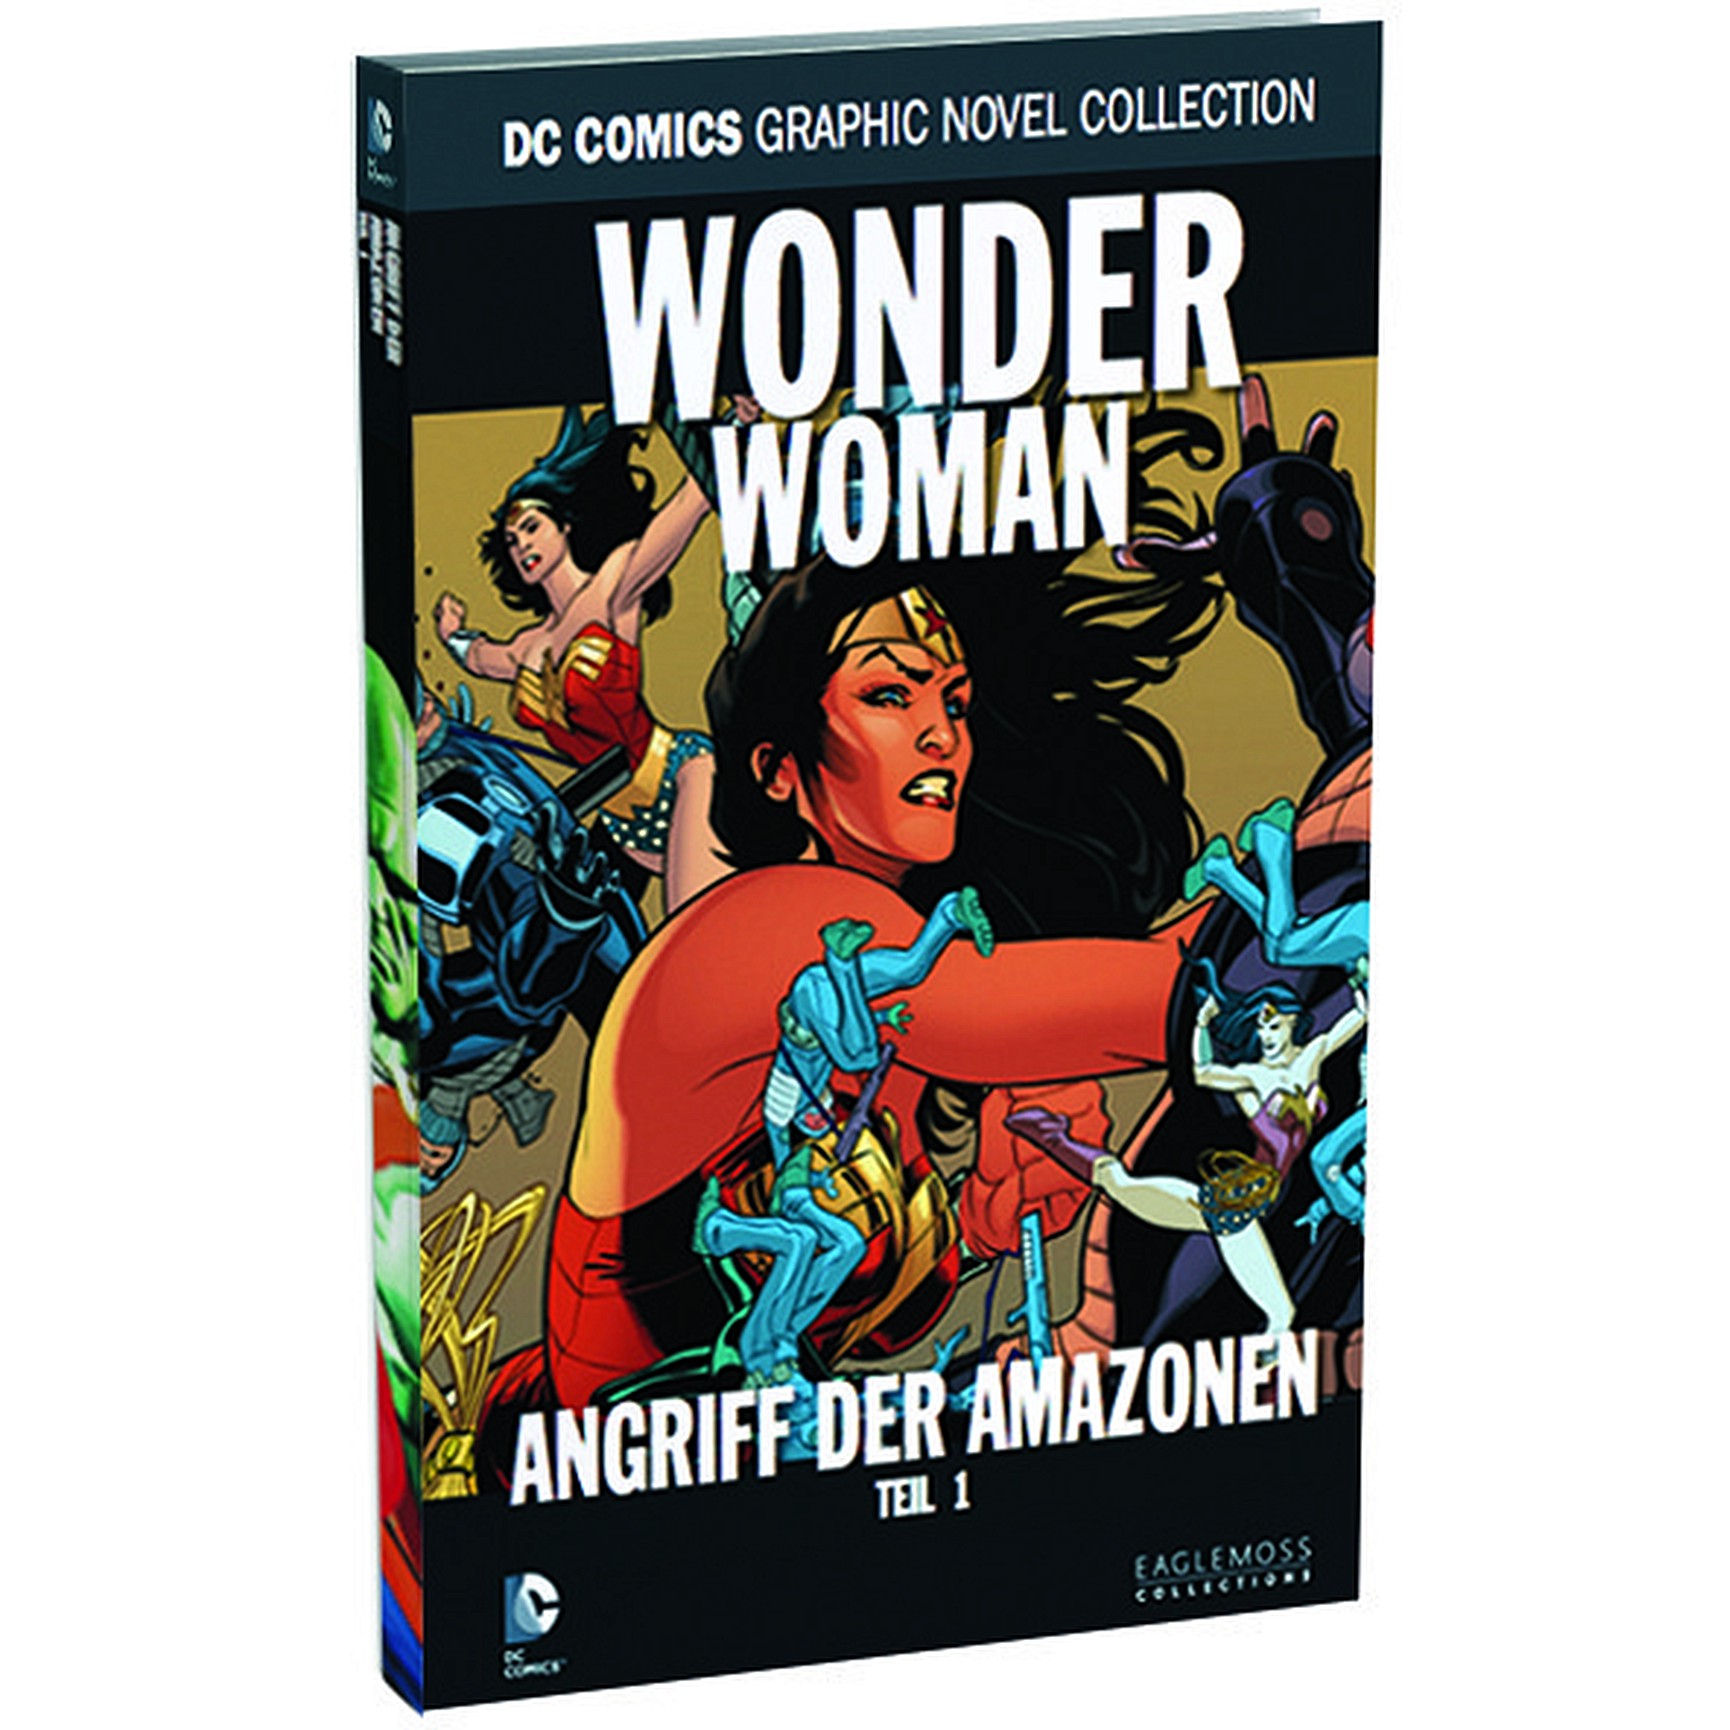 DC Comics Graphic Novel Collection Wonder Woman - Angriff der Amazonen Teil 1